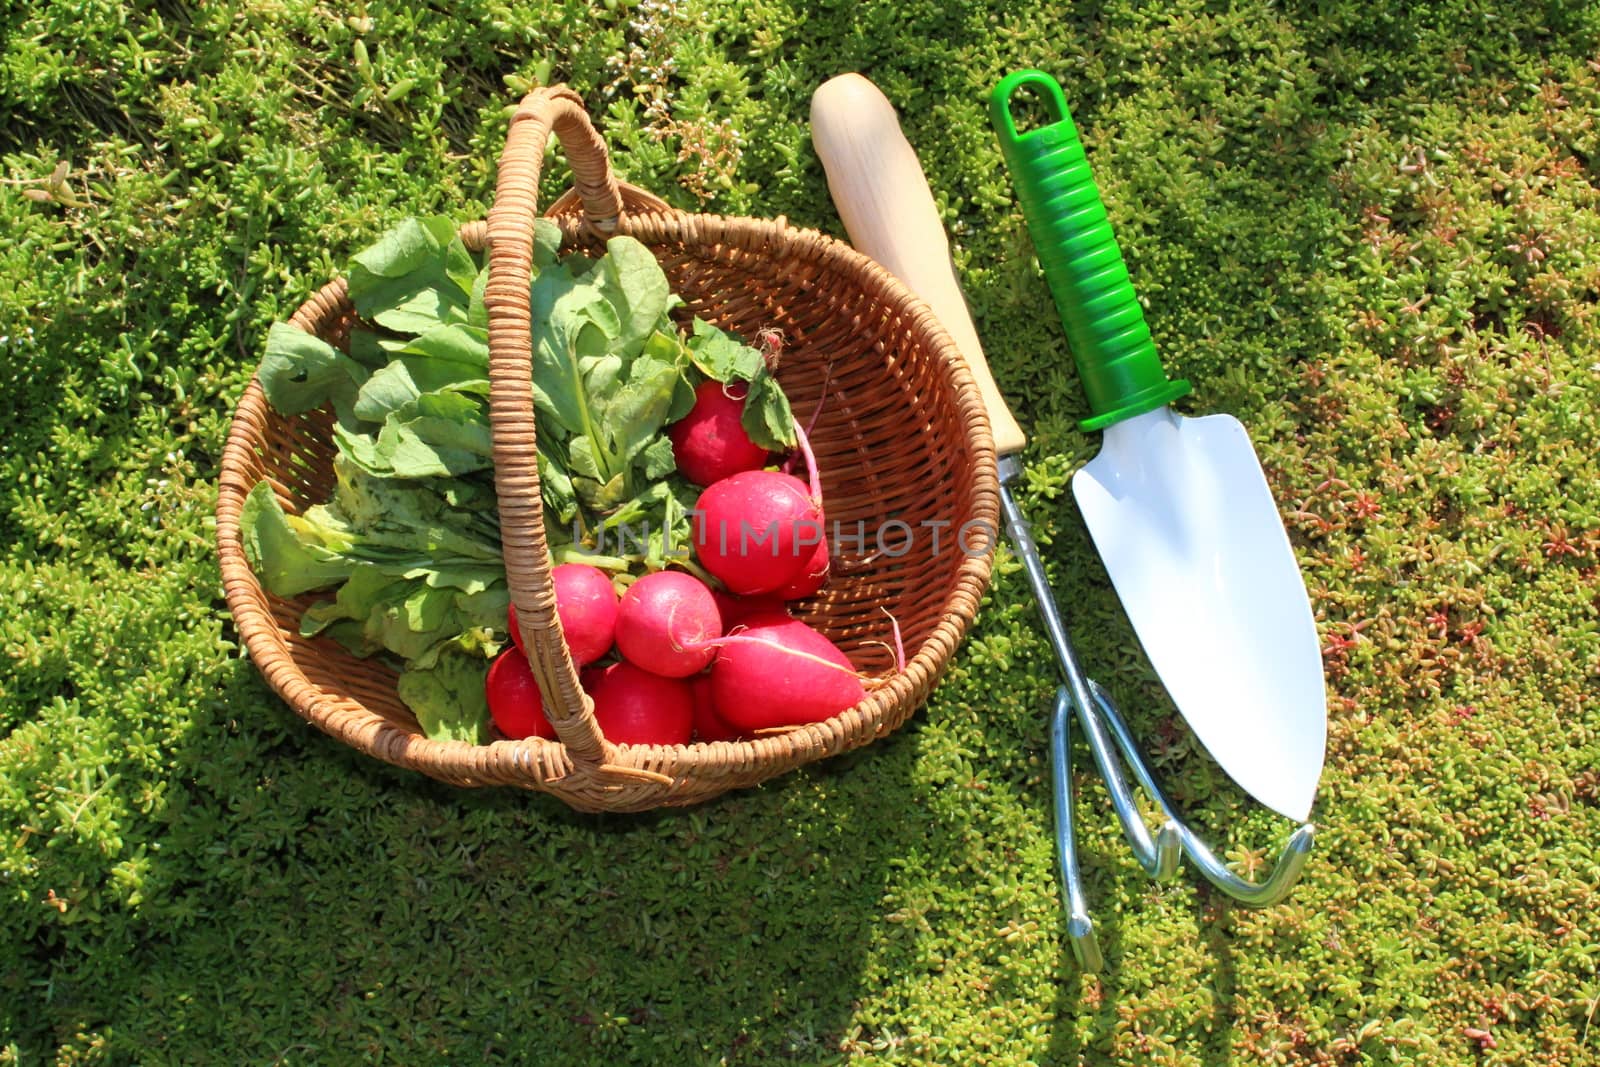 radish in a basket in the garden by martina_unbehauen